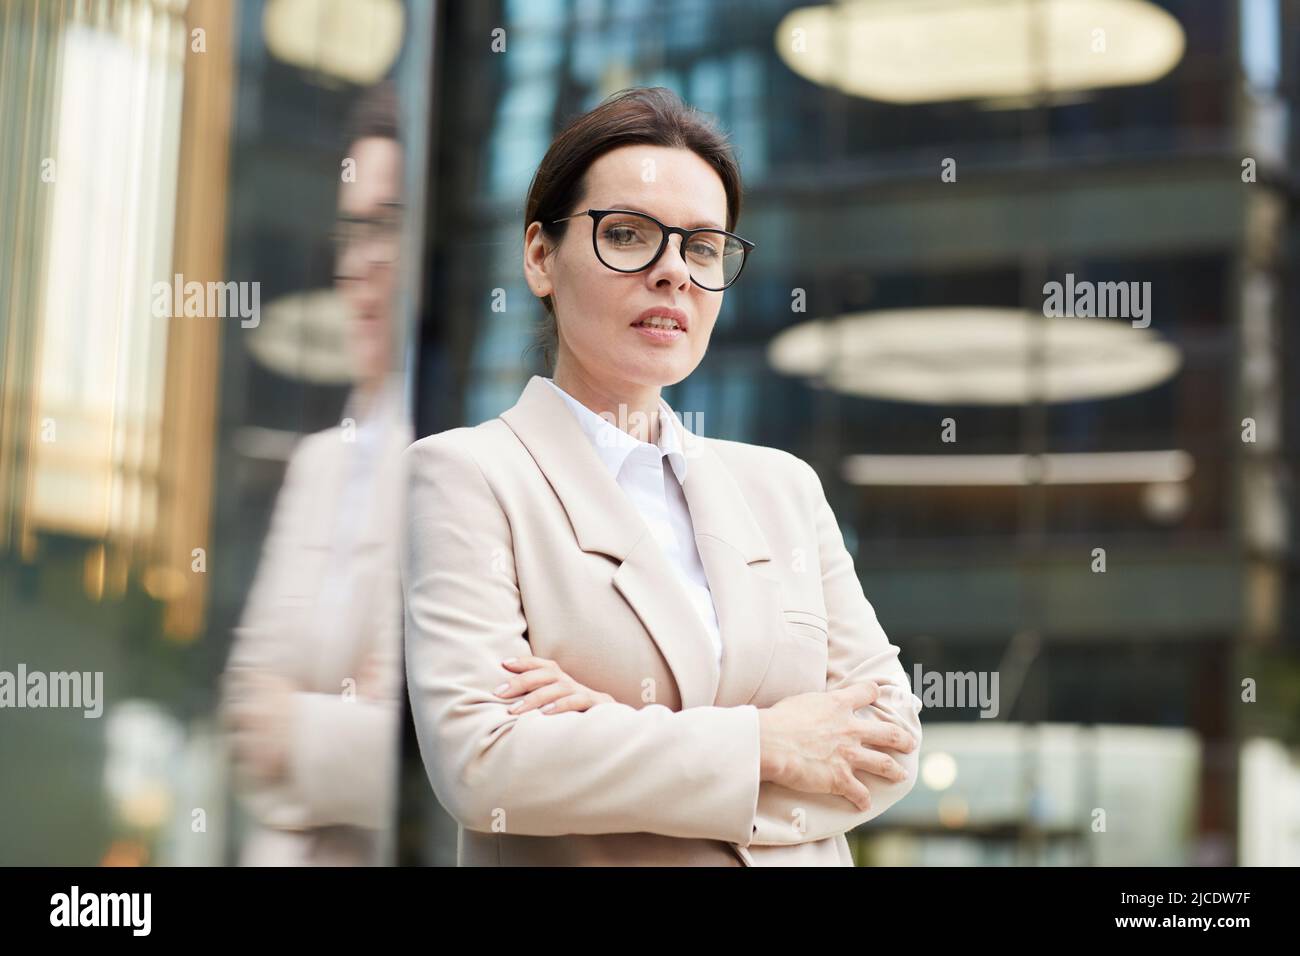 Content-Porträt eine selbstbewusste Dame mittleren Alters in stilvoller Jacke und Brillen, die die Arme auf der Brust kreuzt, während sie in der Lobby des Business Centers steht Stockfoto